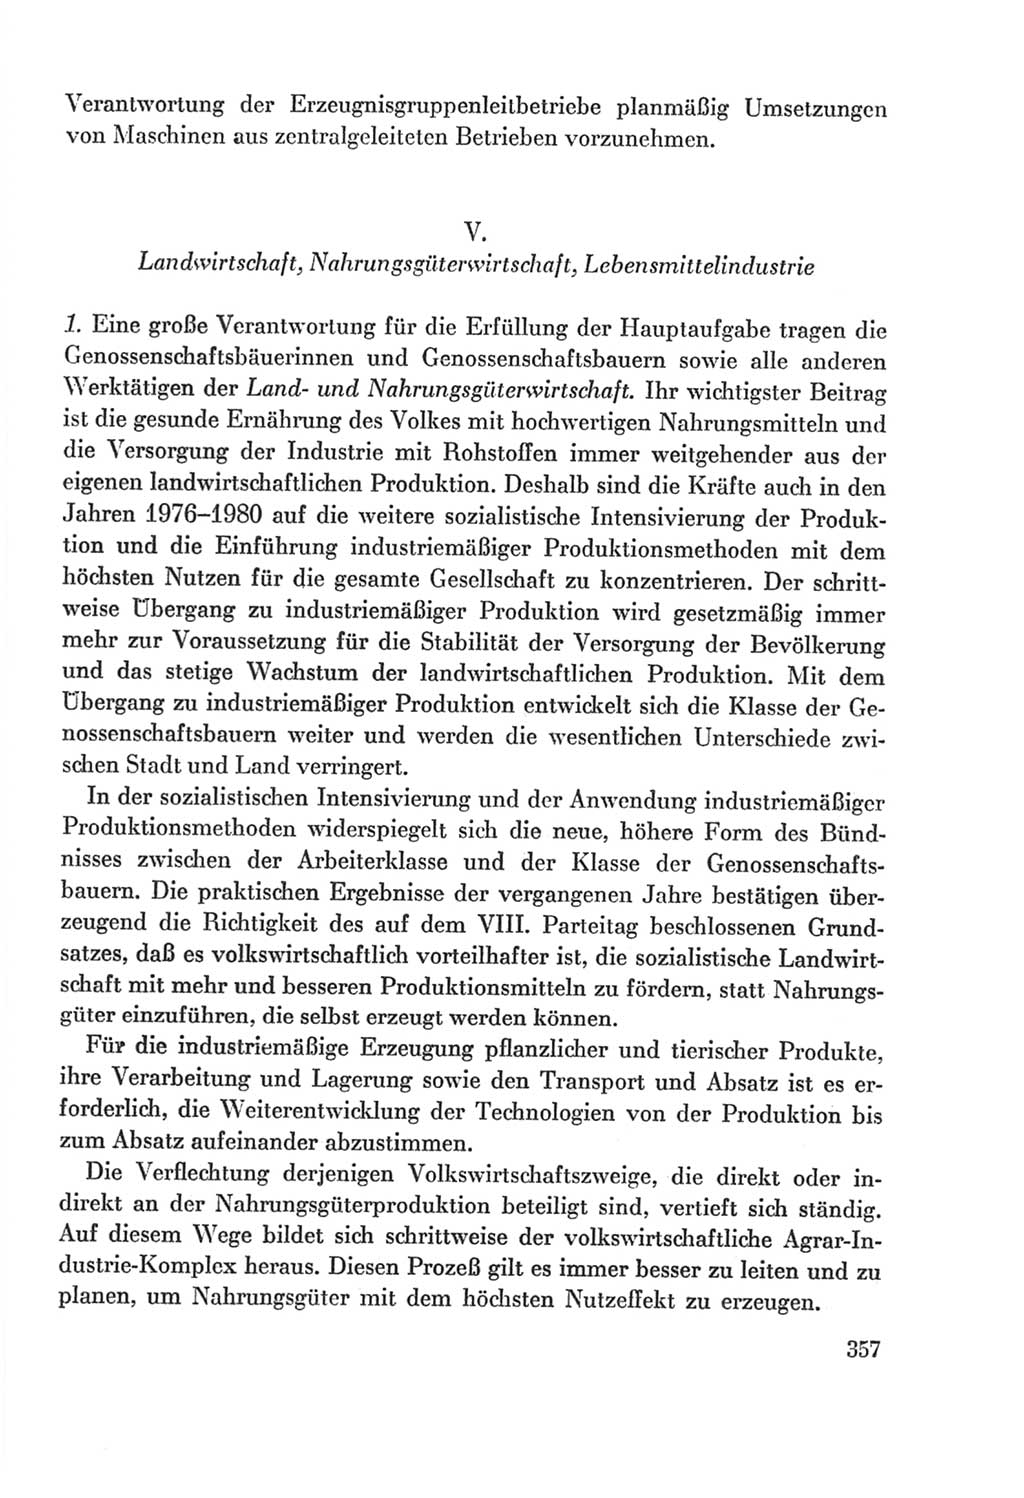 Protokoll der Verhandlungen des Ⅸ. Parteitages der Sozialistischen Einheitspartei Deutschlands (SED) [Deutsche Demokratische Republik (DDR)] 1976, Band 2, Seite 357 (Prot. Verh. Ⅸ. PT SED DDR 1976, Bd. 2, S. 357)